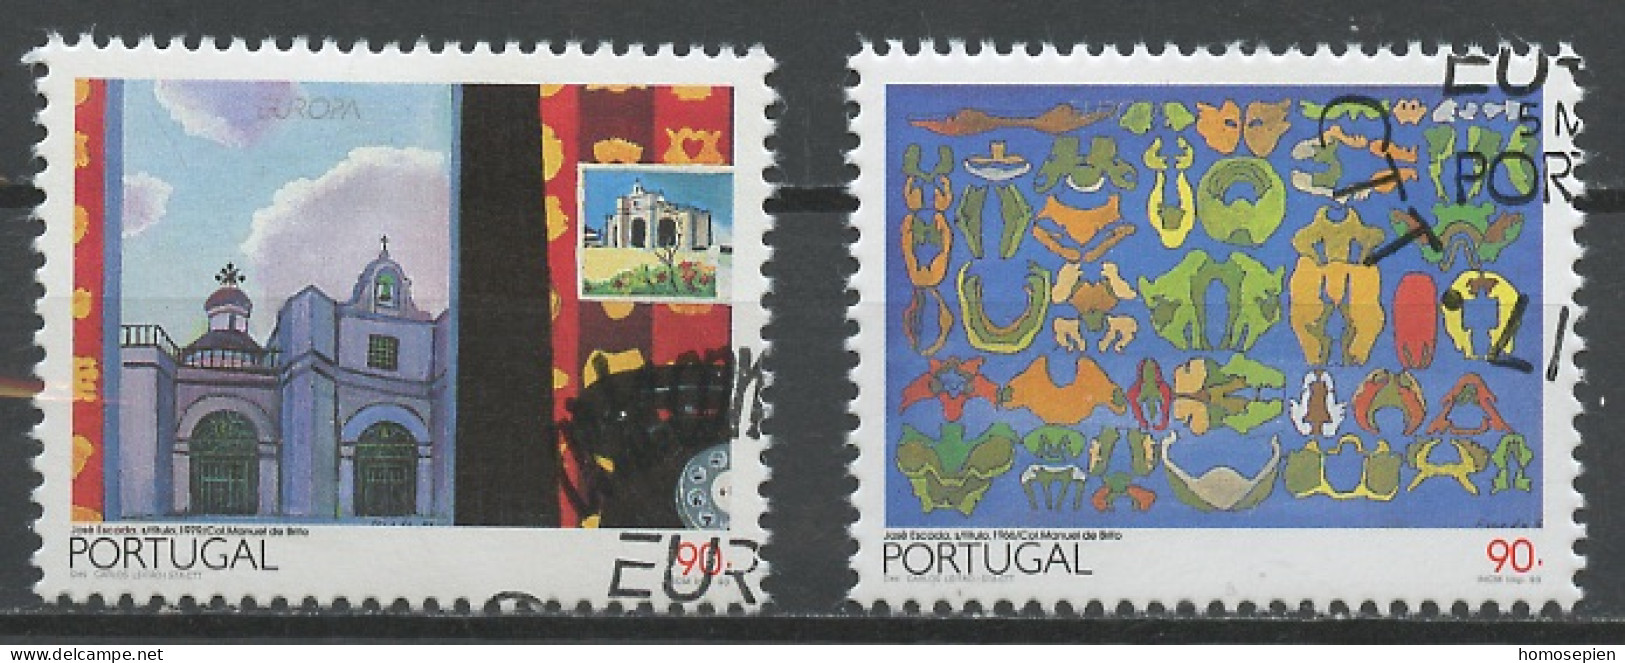 Portugal 1993 Y&T N°1937 à 1938 - Michel N°1959 à 1960 (o) - EUROPA - Usado